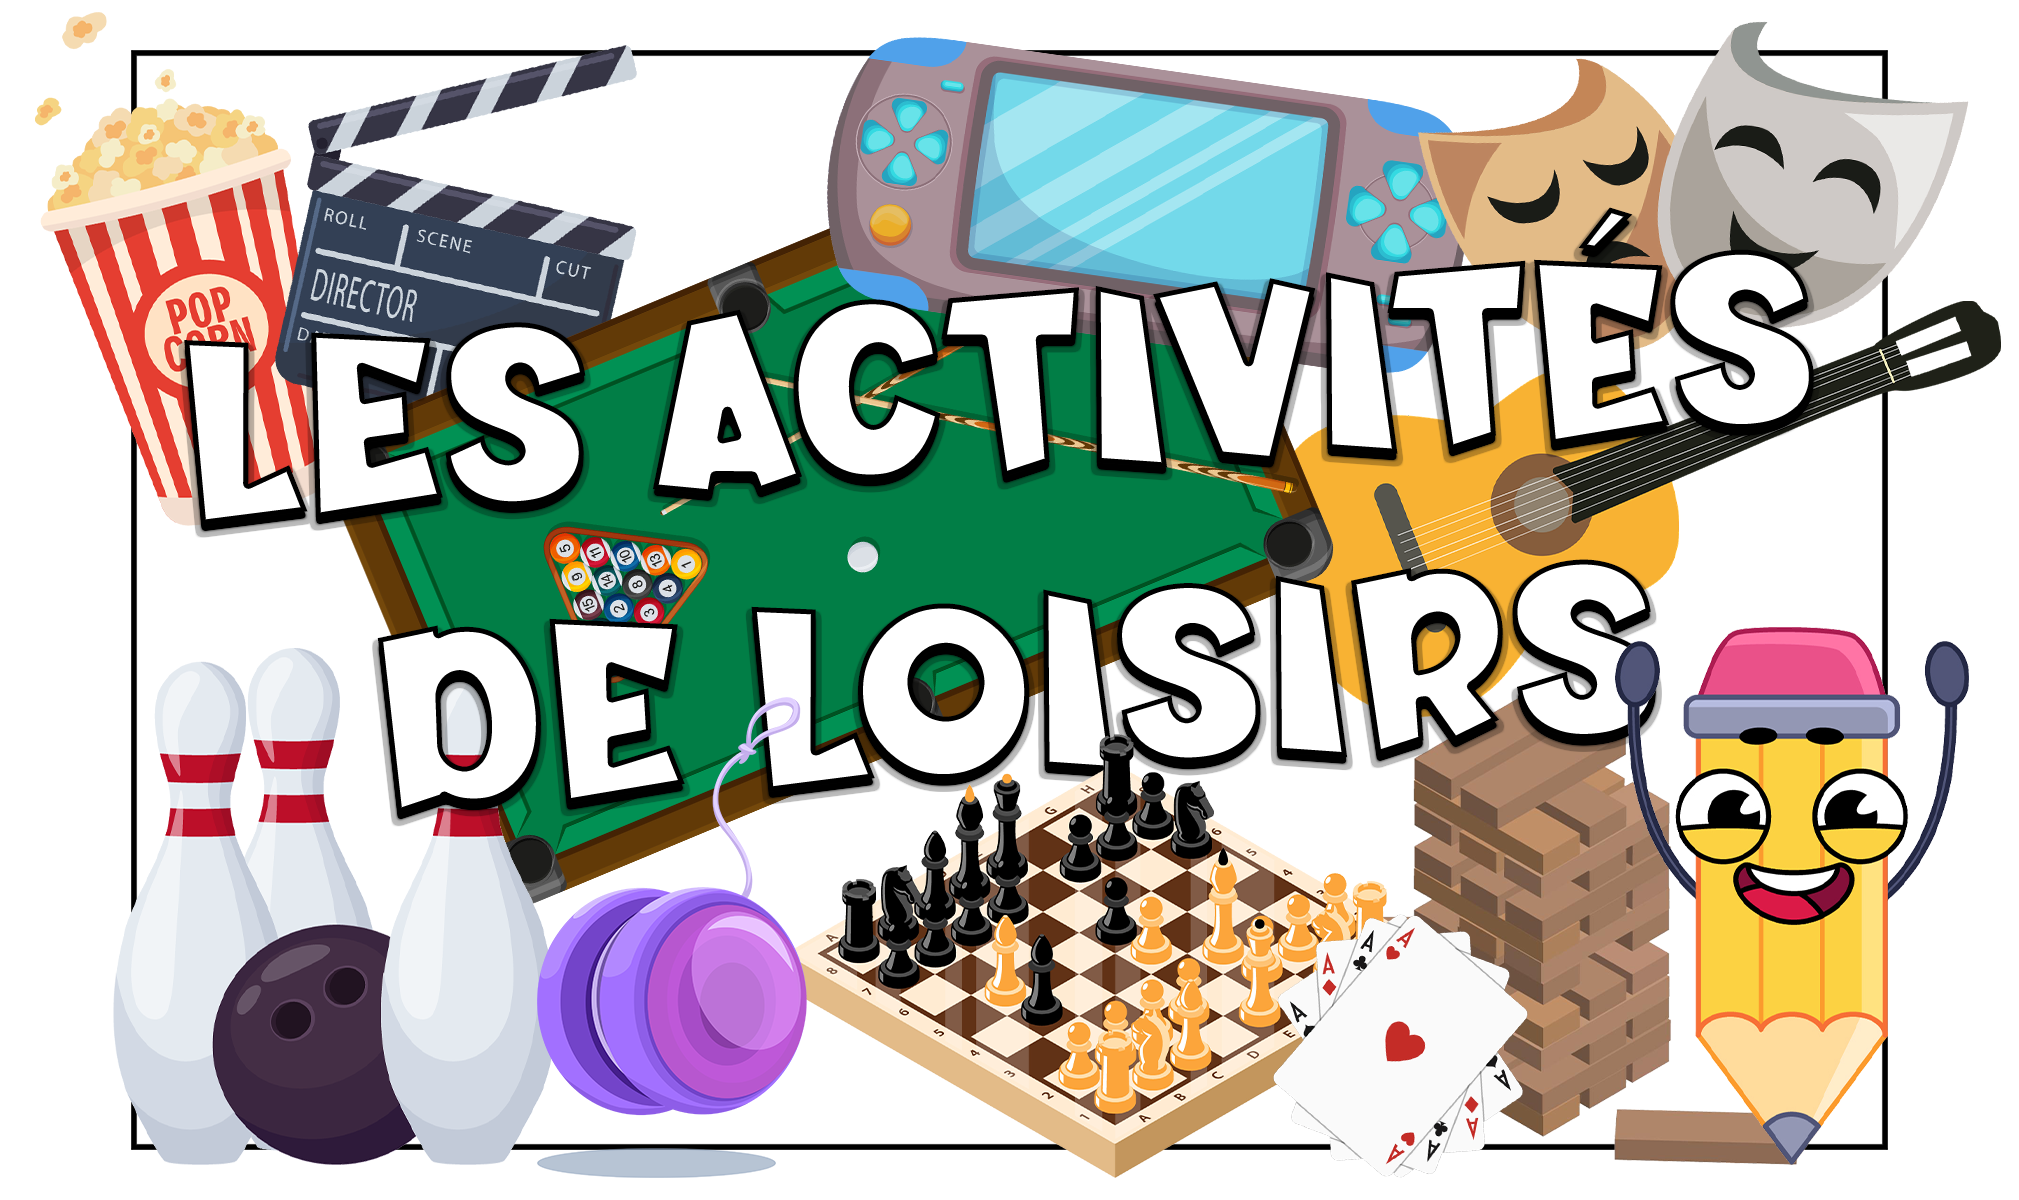 Actividades de ocio y entretenimiento en francés